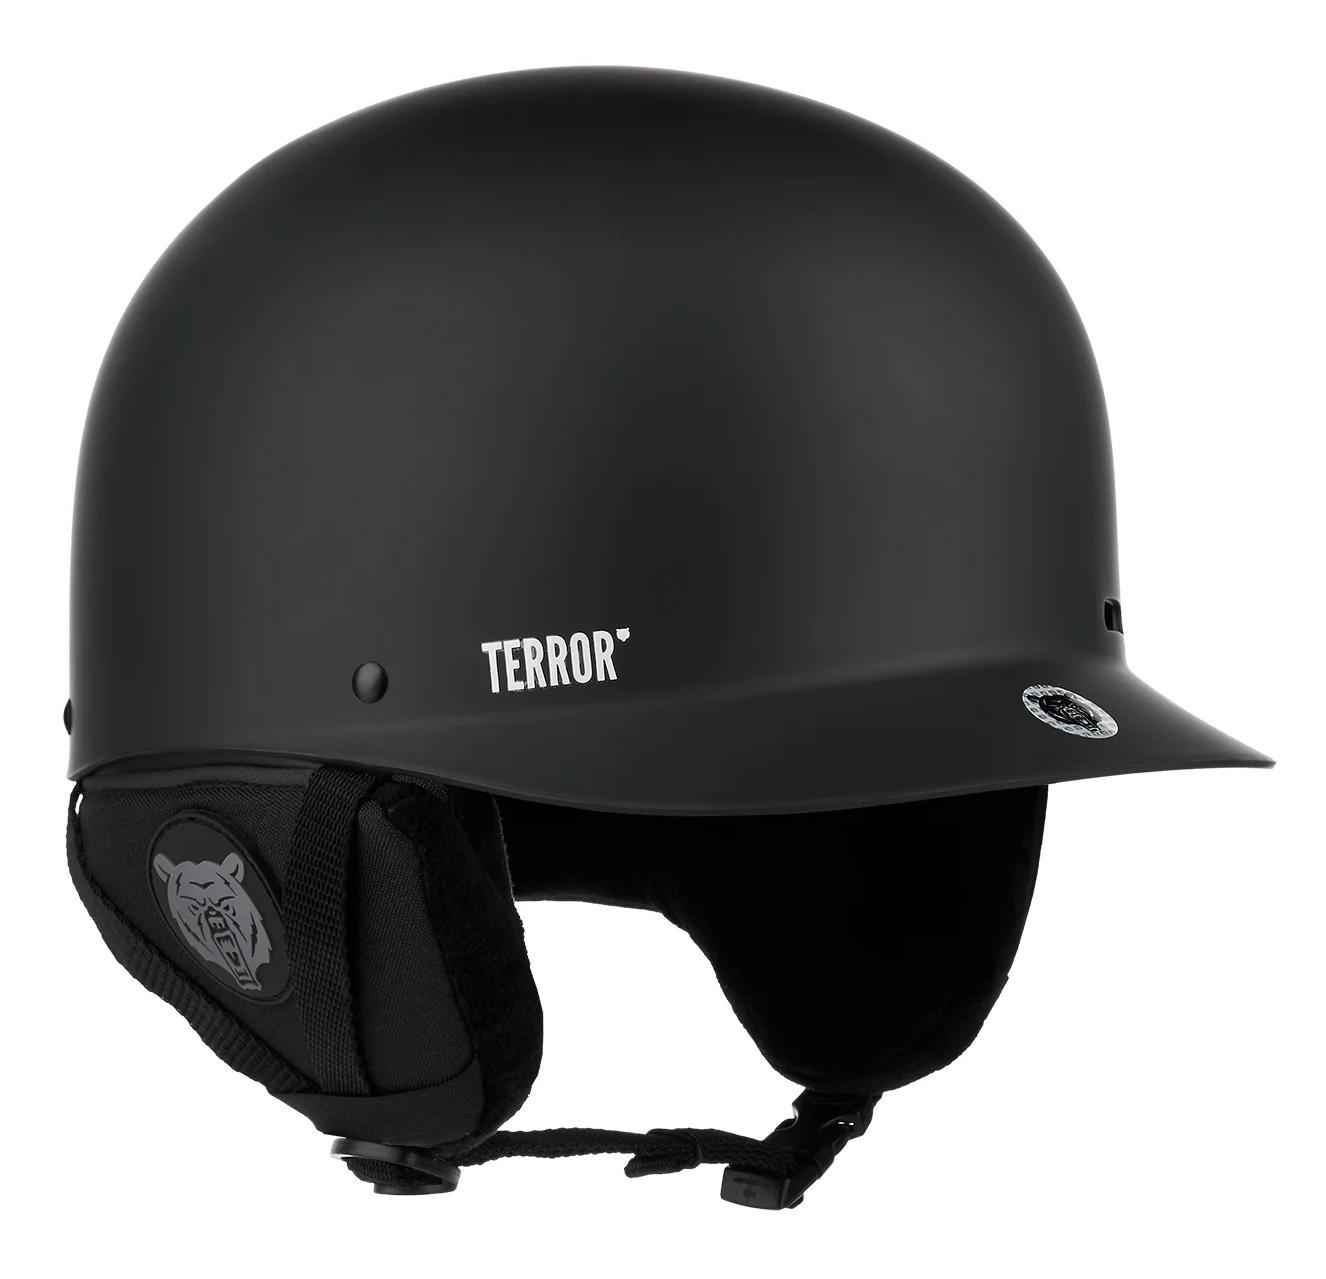 Шлем TERROR - CRANG Black шлем детский размер m голубой maxiscoo msc h101902m